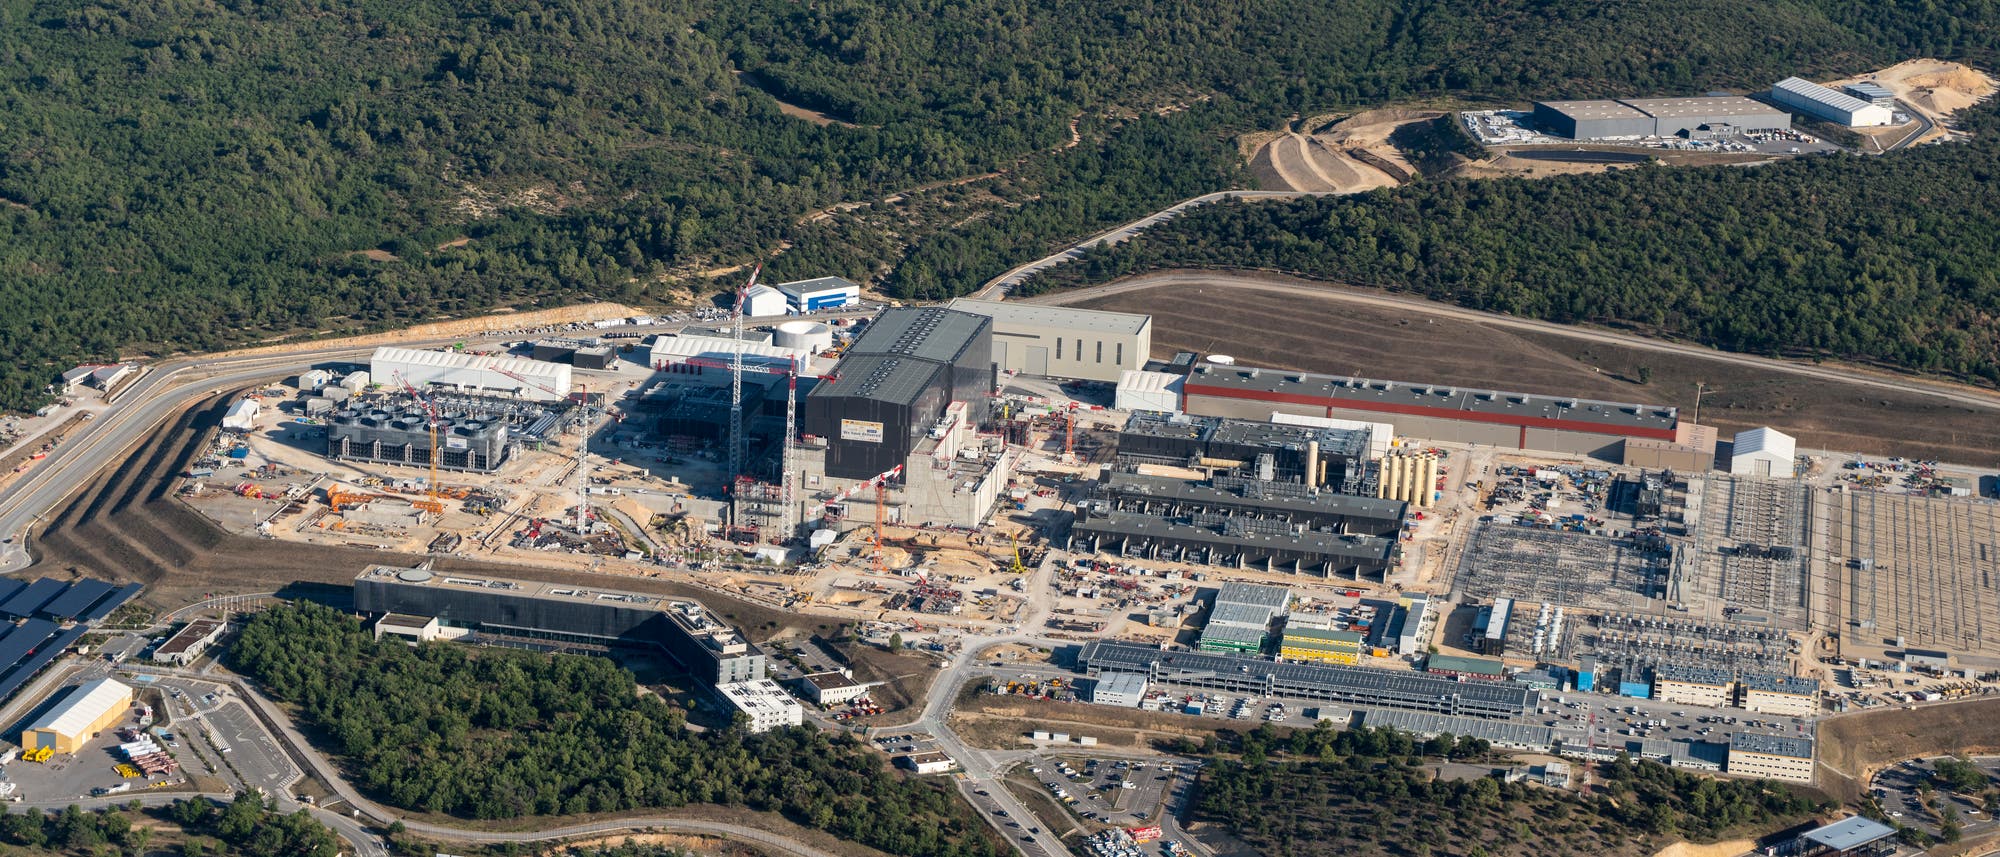 Luftaufnahme der Baustelle des Forschungsreaktors ITER im französischen Cadarache